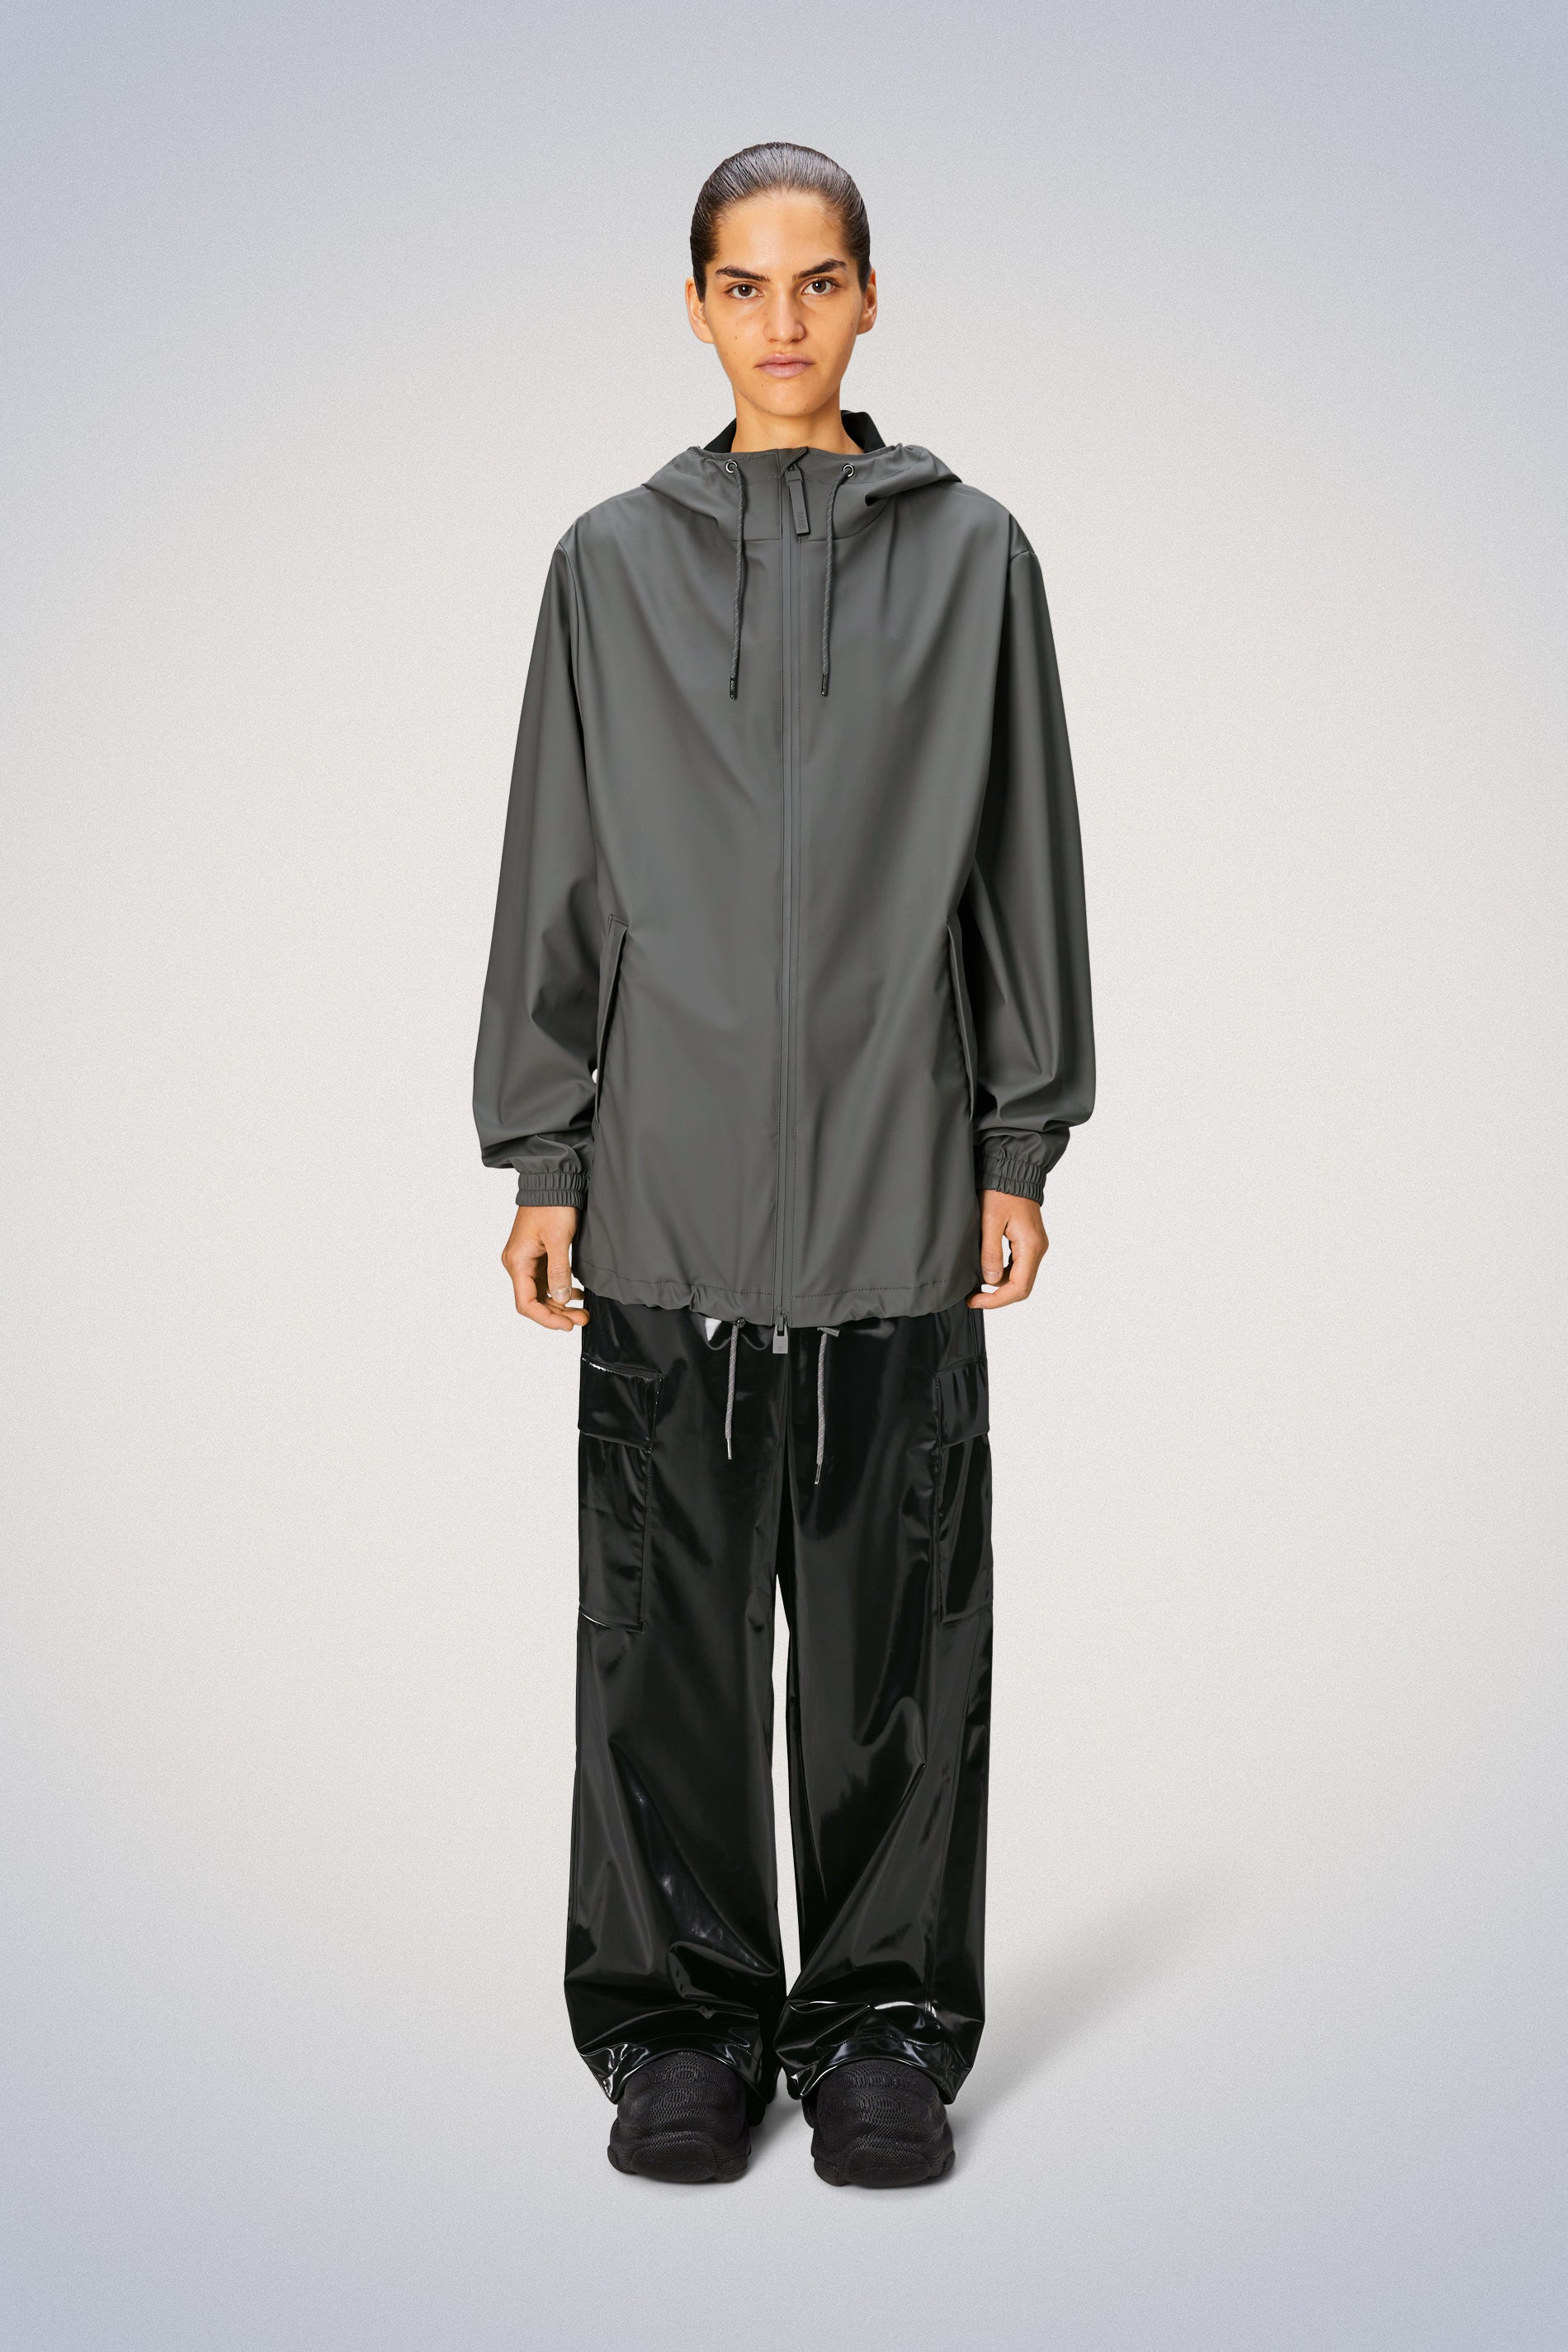 Raingear for Women | Buy Rainwear & Outfits | Free Shipping